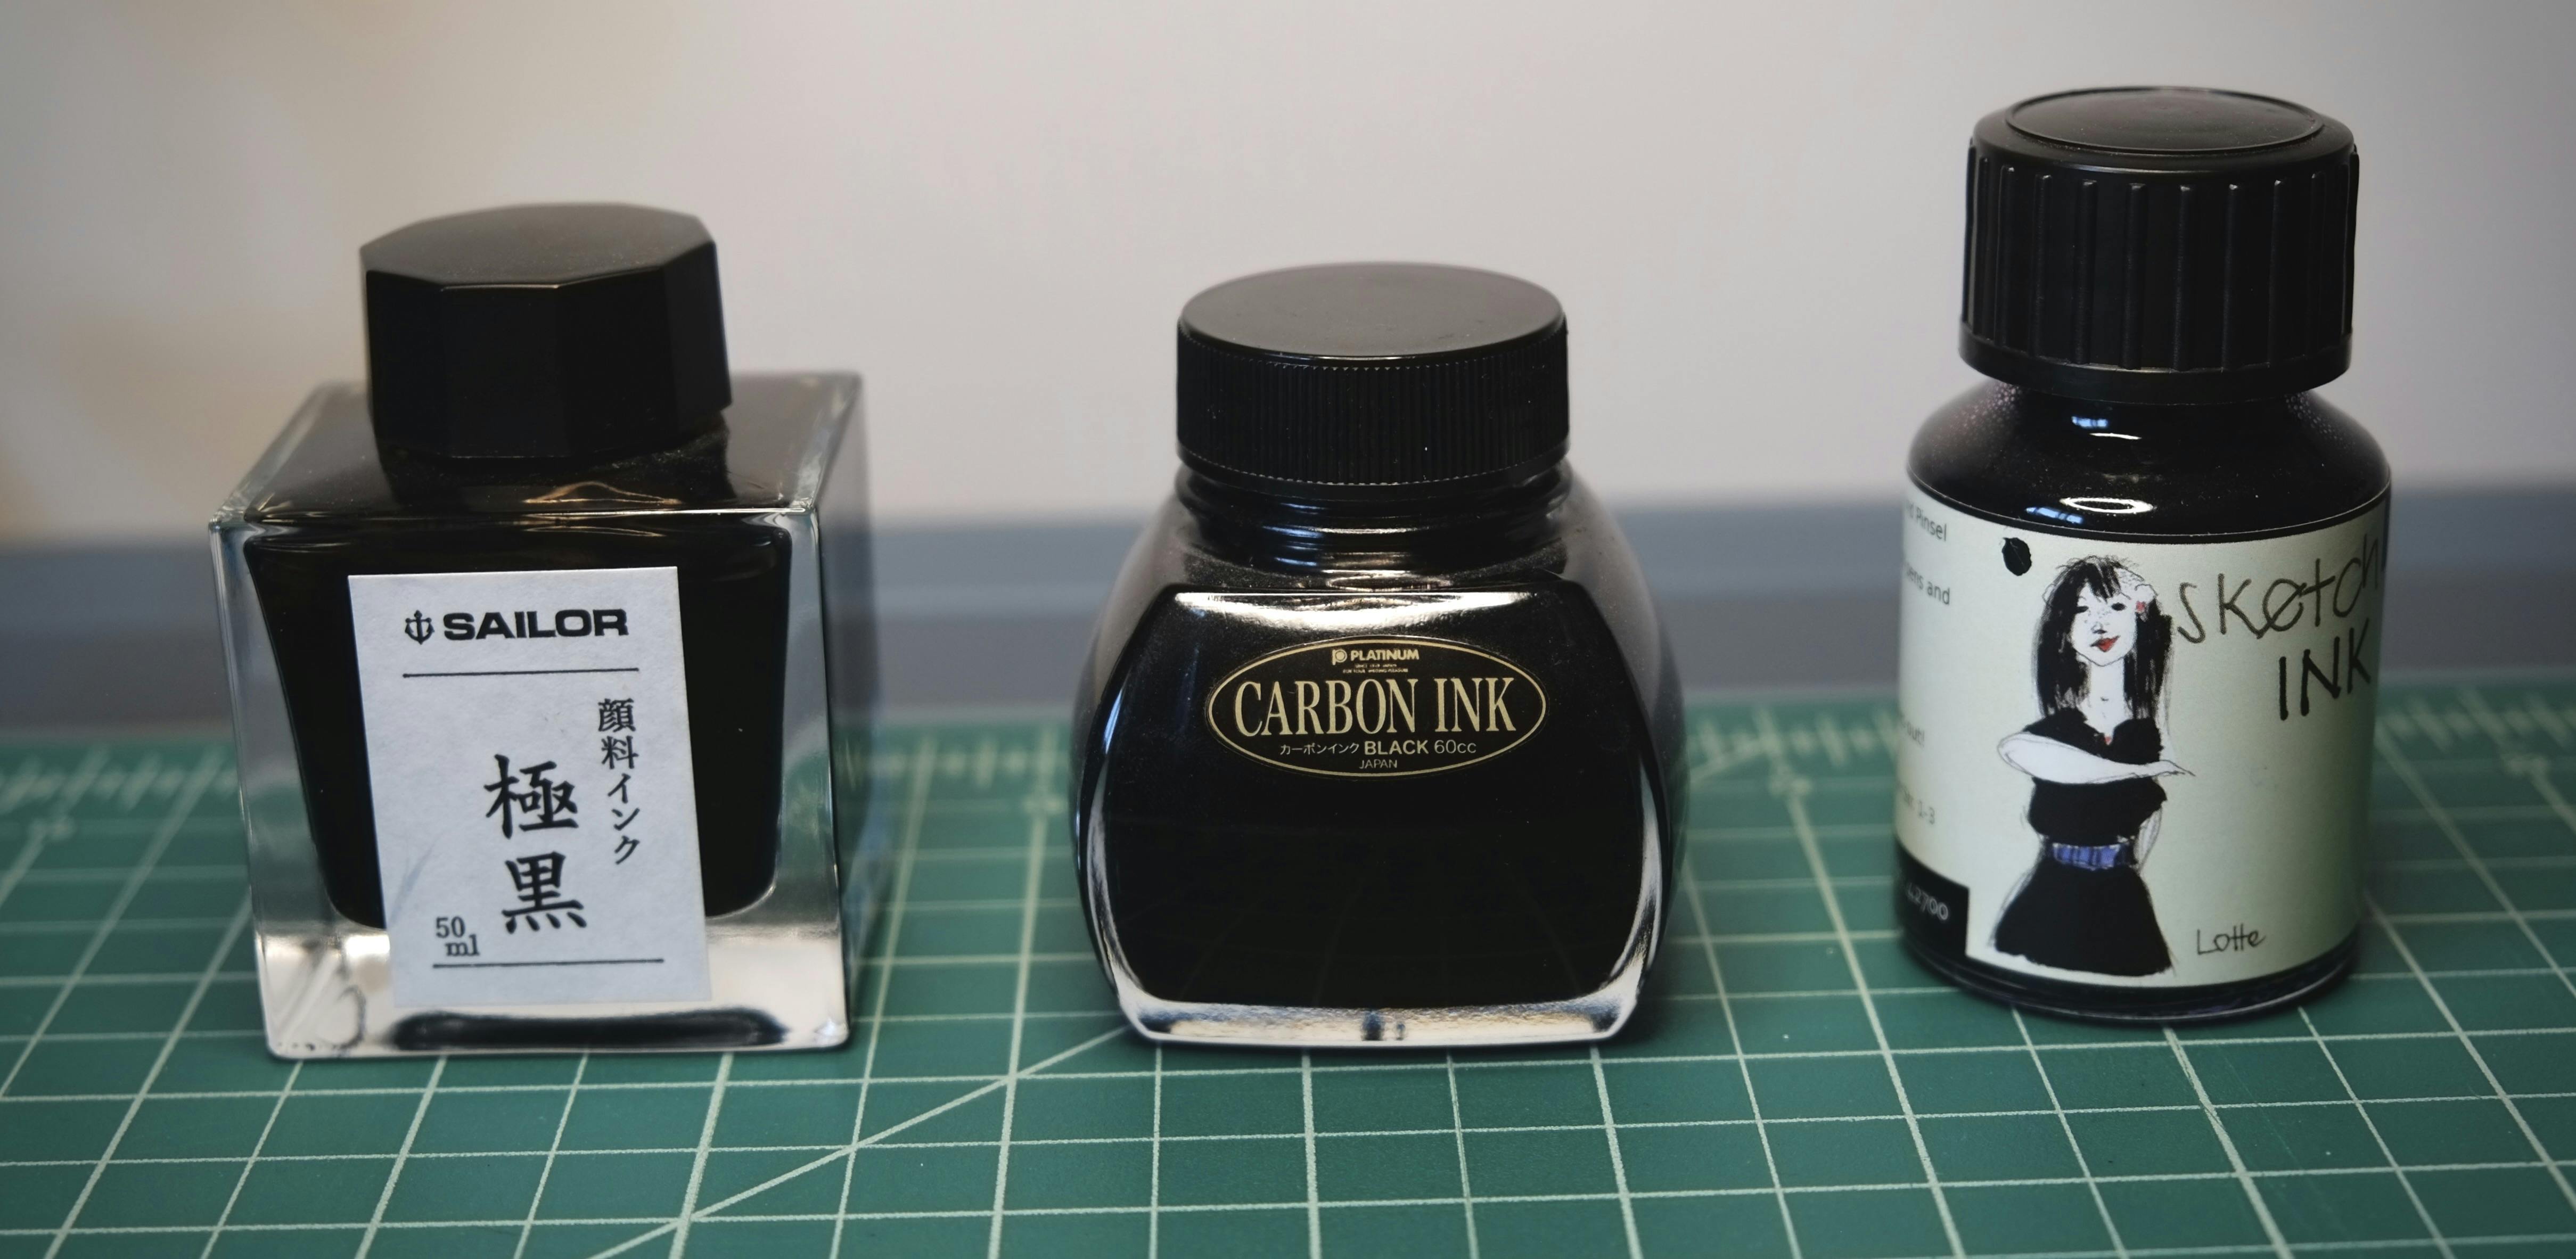 Bottles of pigment ink: Sailor Kiwaguro, Platinum Carbon Black, and Rohrer & Klingner's Sketch Lotte